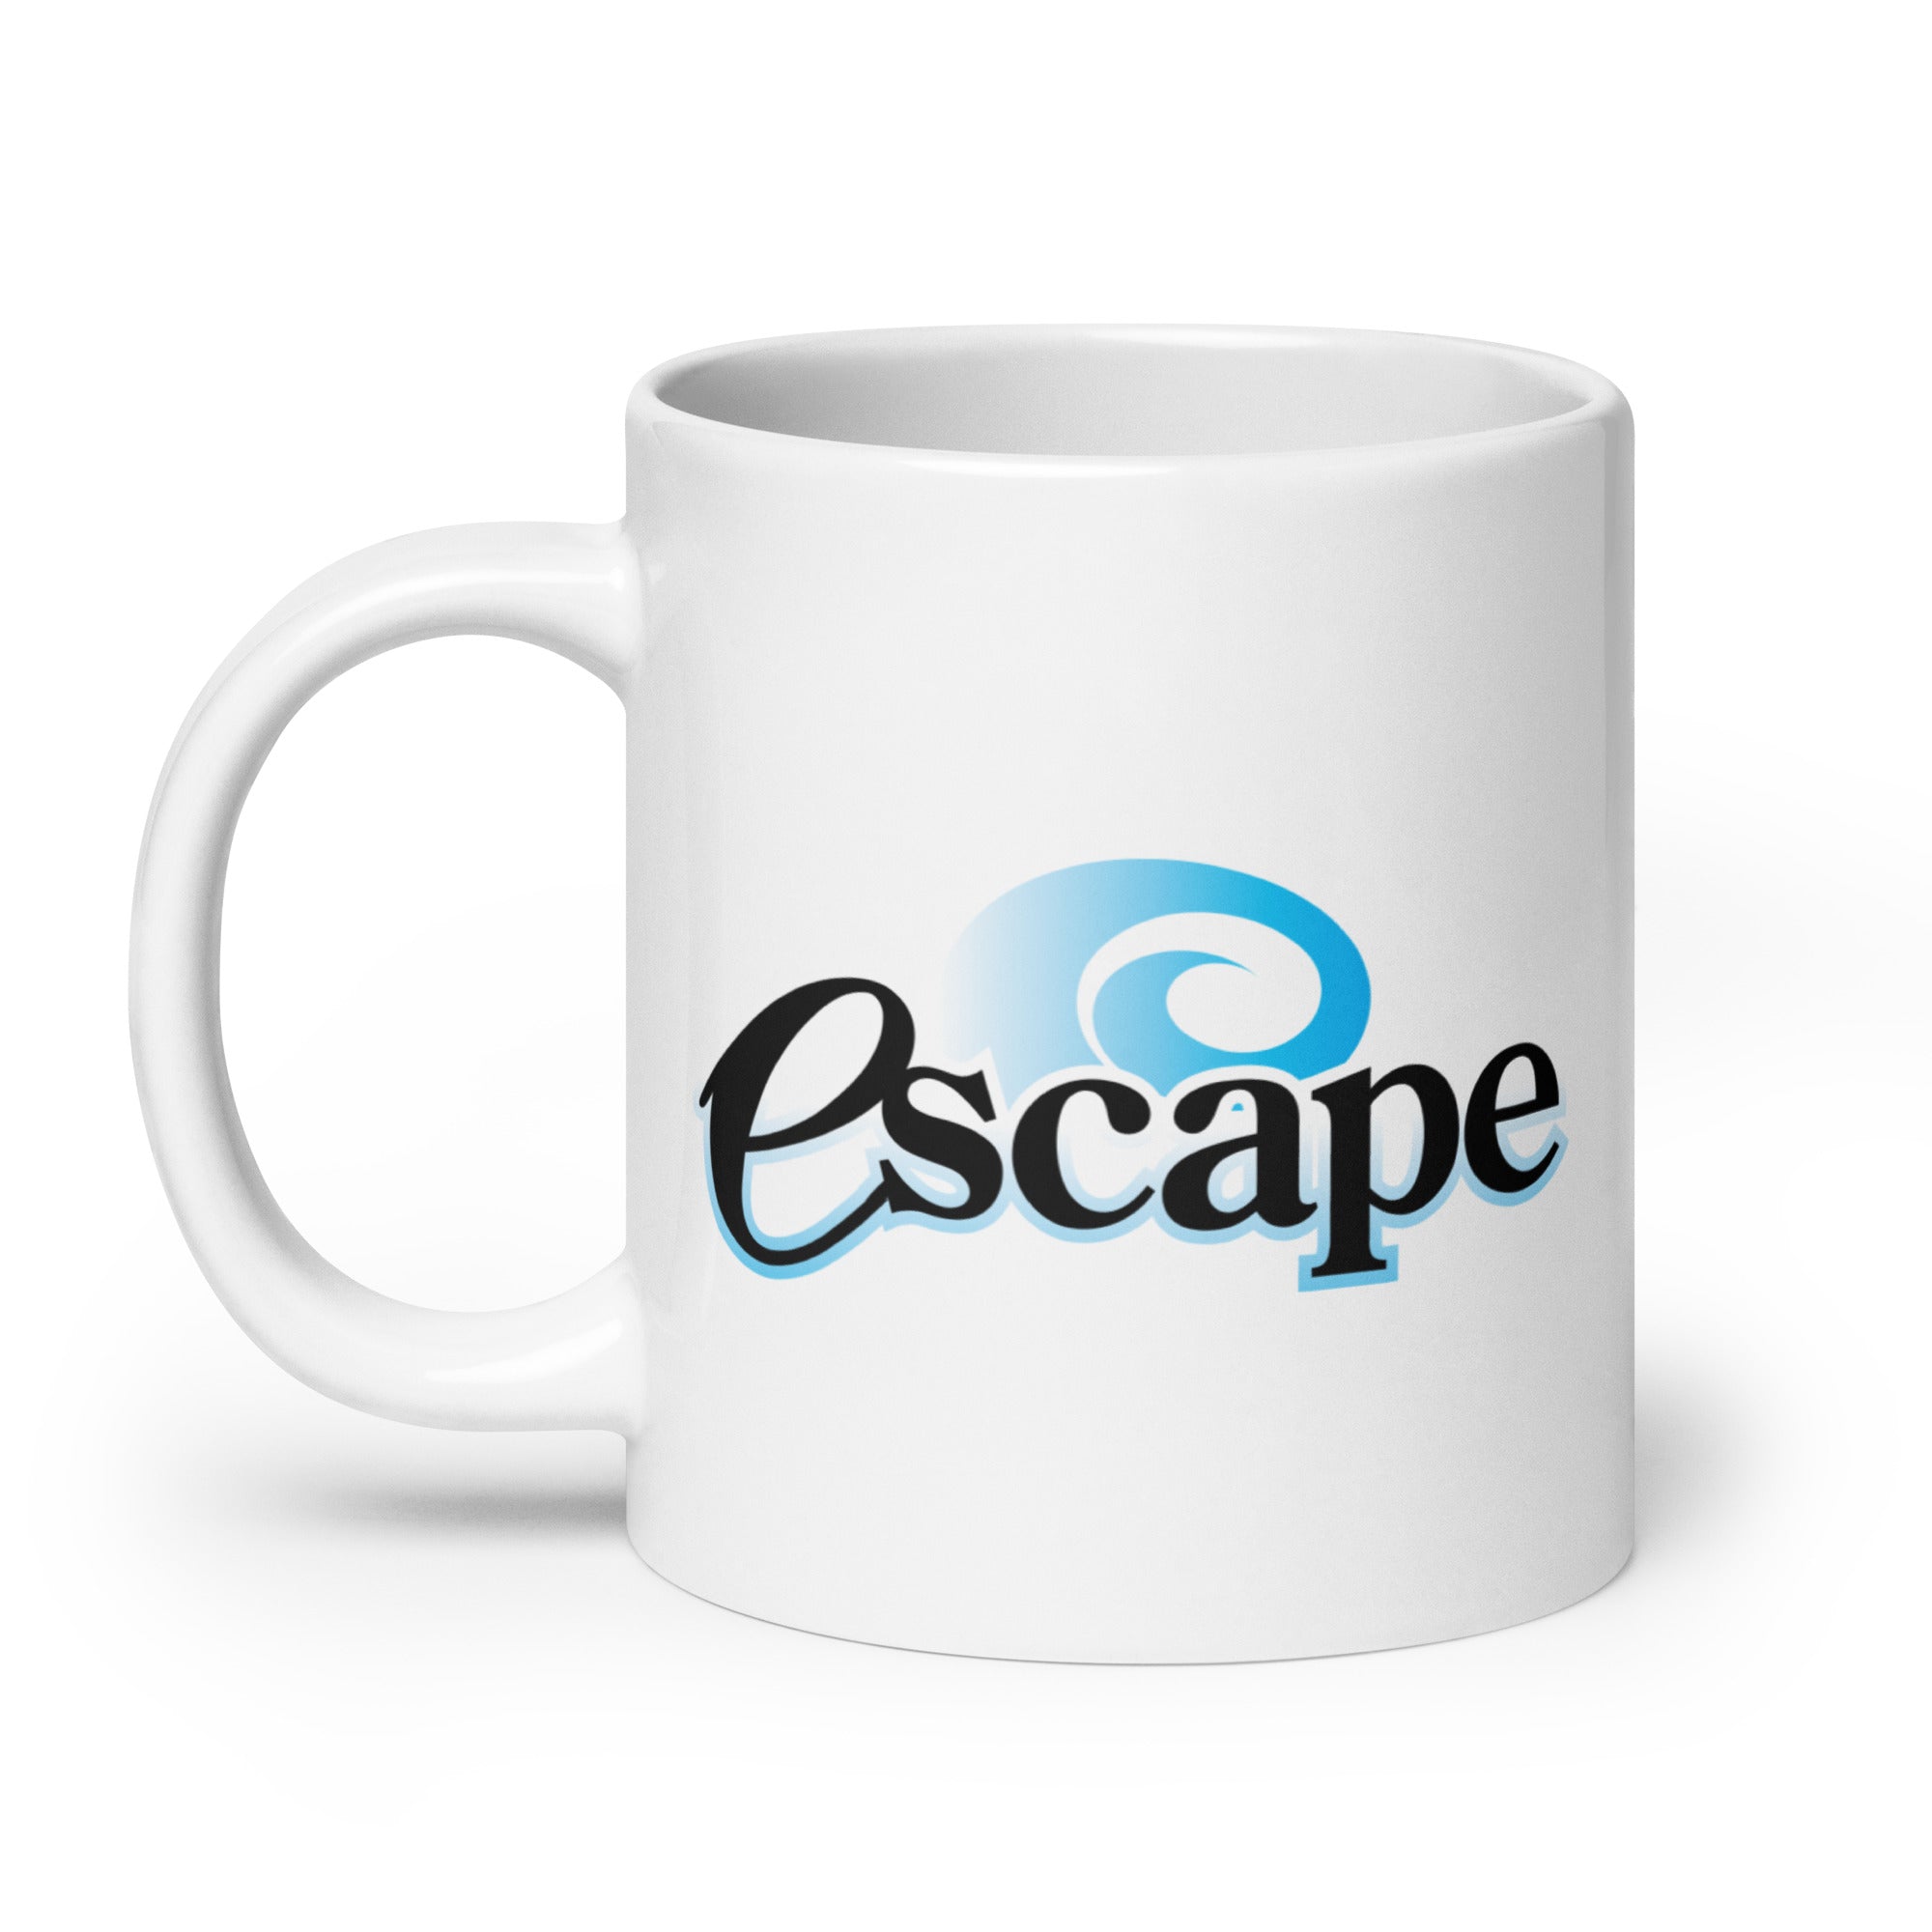 Escape: Mug